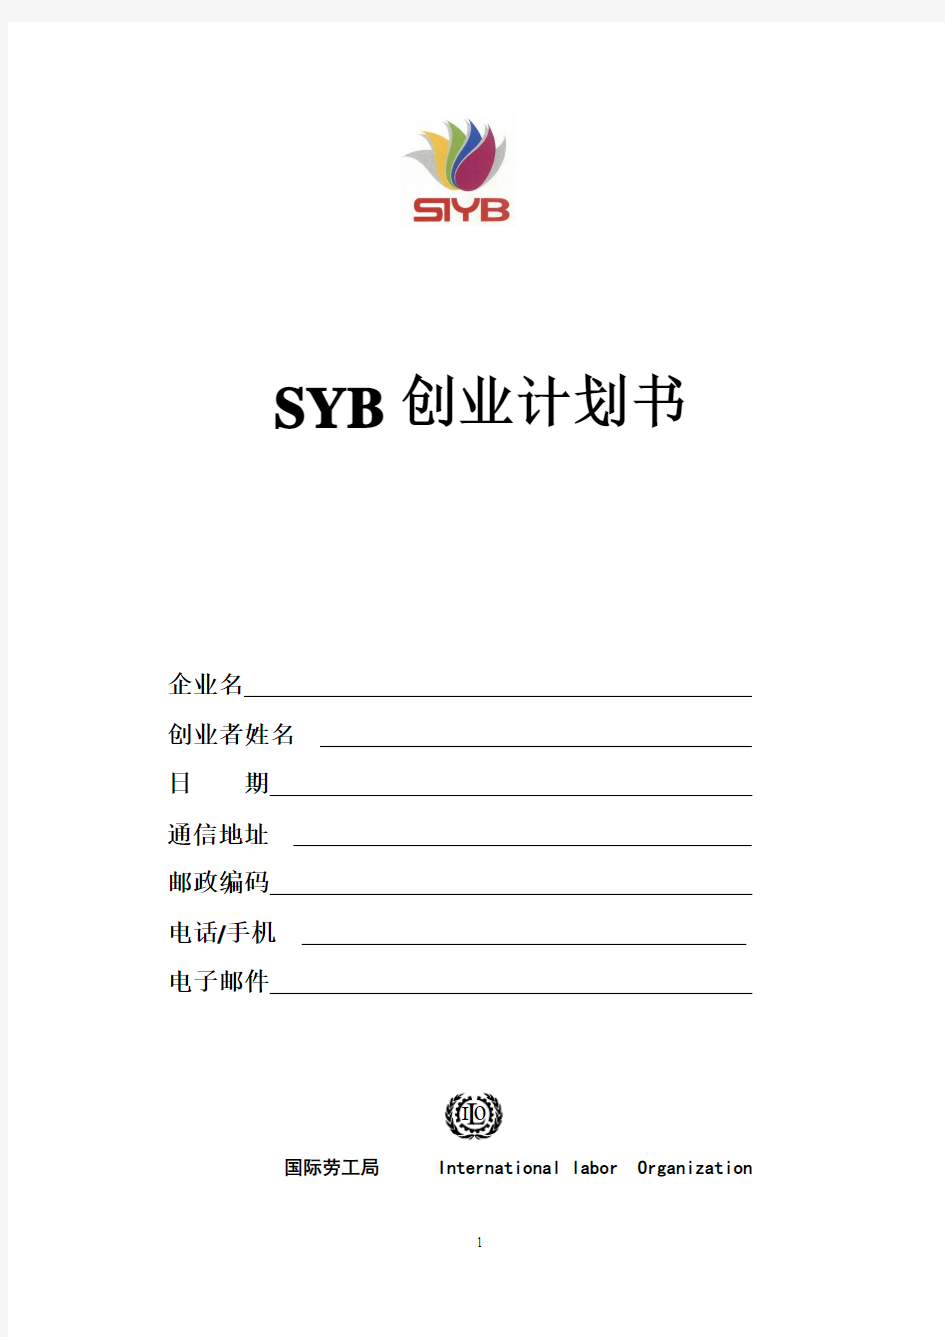 SIYB创业计划书(电子模板) (1)